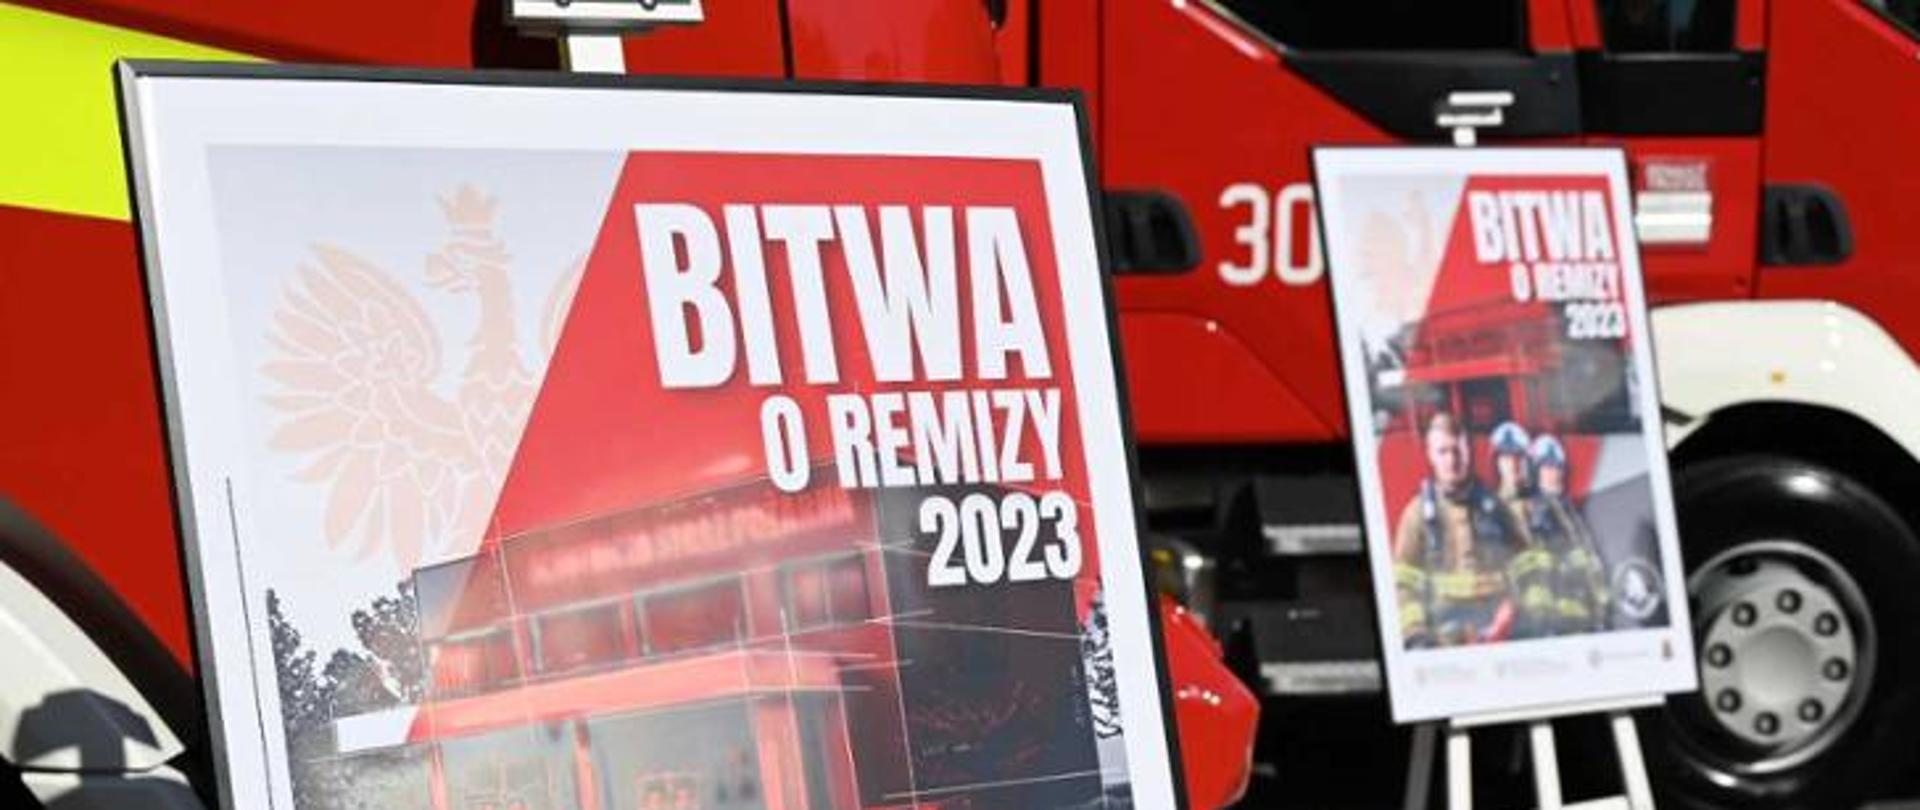 Dwa banery z napisami Bitwa o Remizy 2023 ustawione na sztalugach na tle samochodu pożarniczego. Banery w odcieniach czerwonego i białego z postaciami strażaków i orła białego.